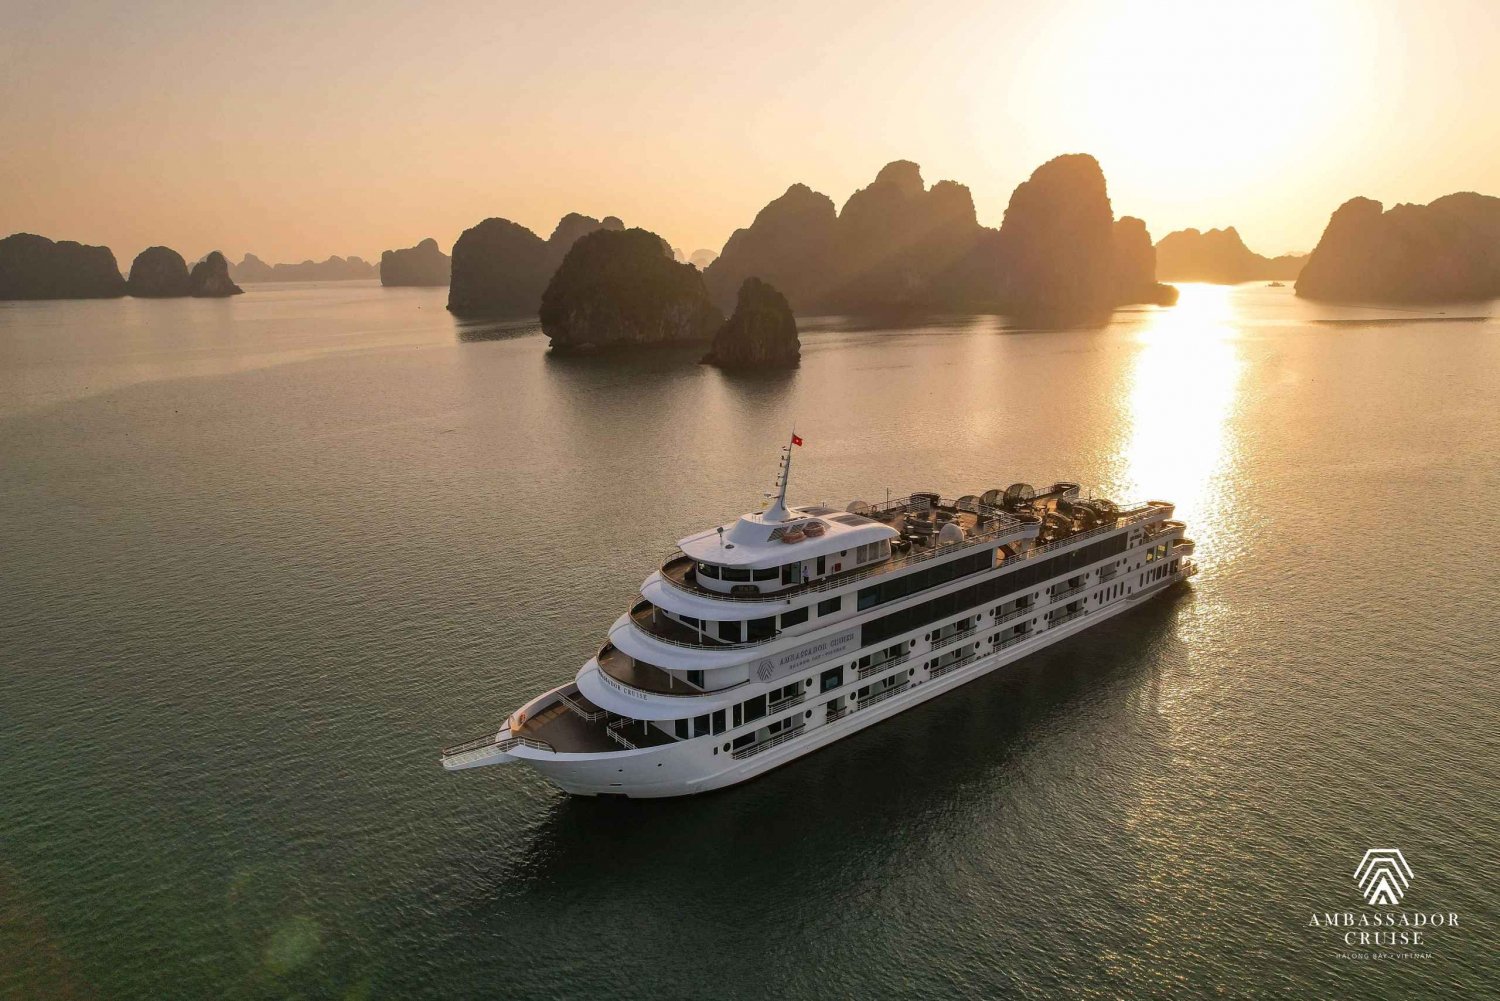 Ambassador Day Cruise - O melhor cruzeiro de um dia na Baía de Halong